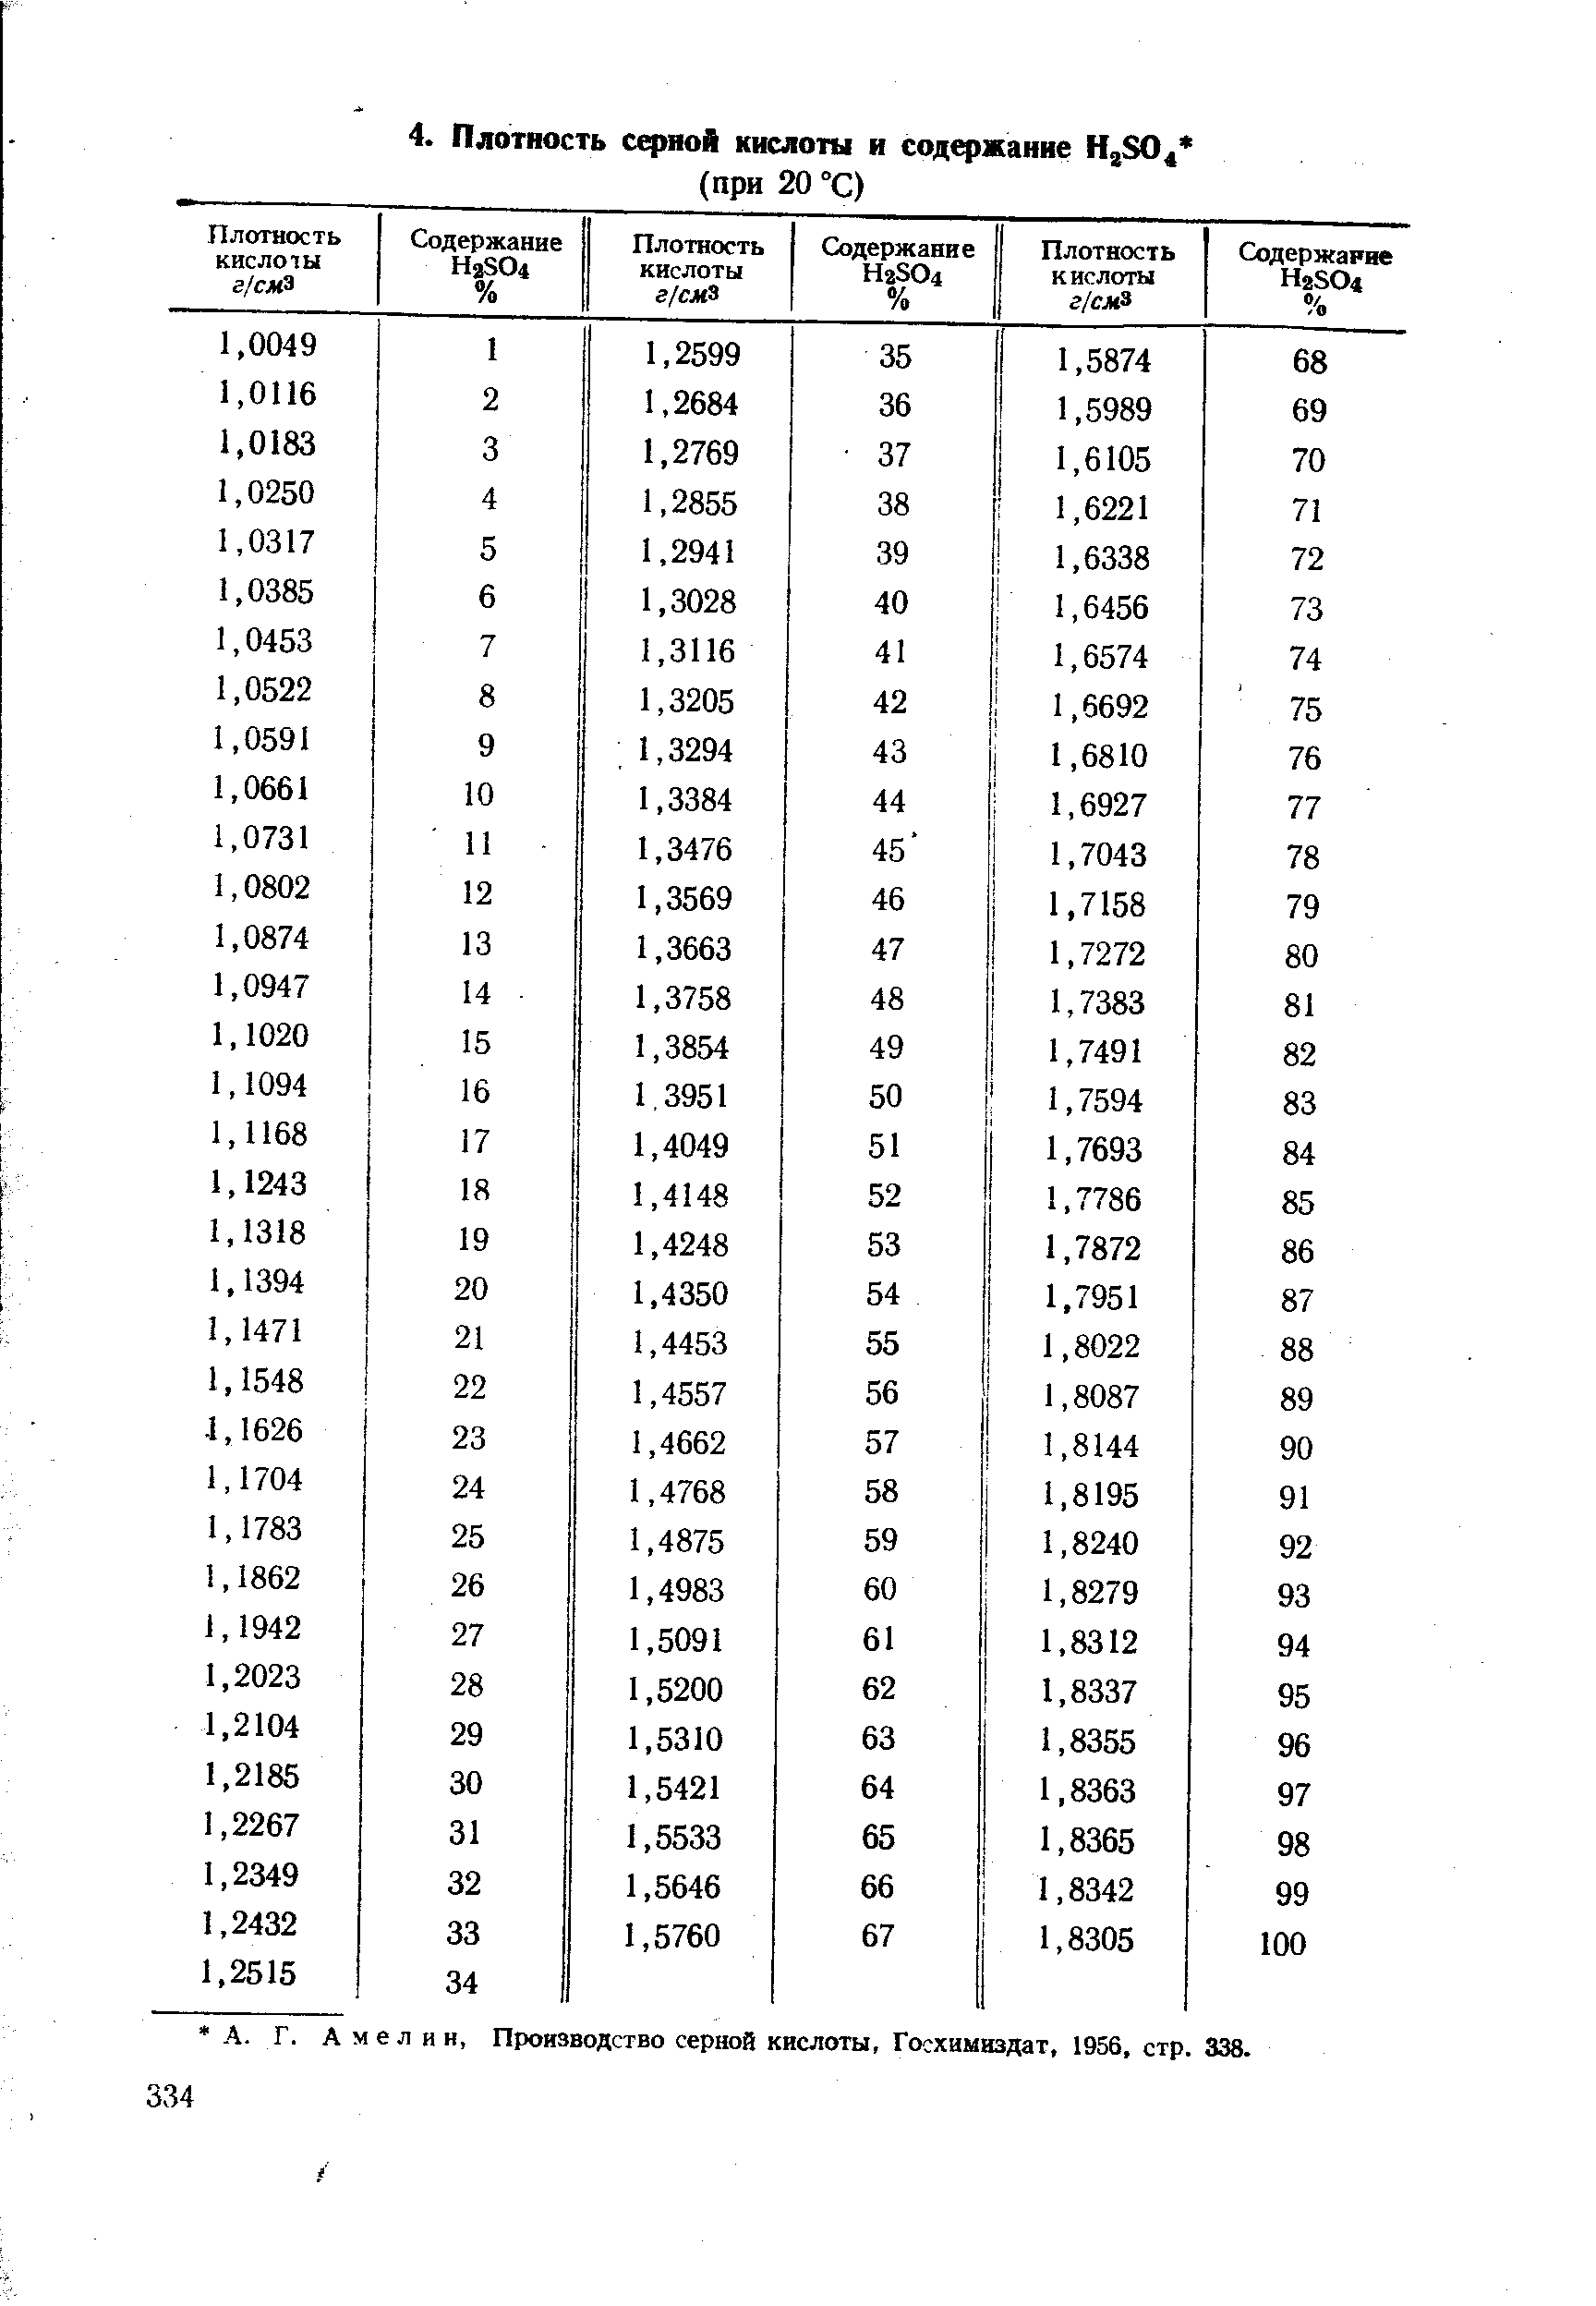 Амелин, Производство серной кислоты, Госхимиздат, 1956, стр. 338.